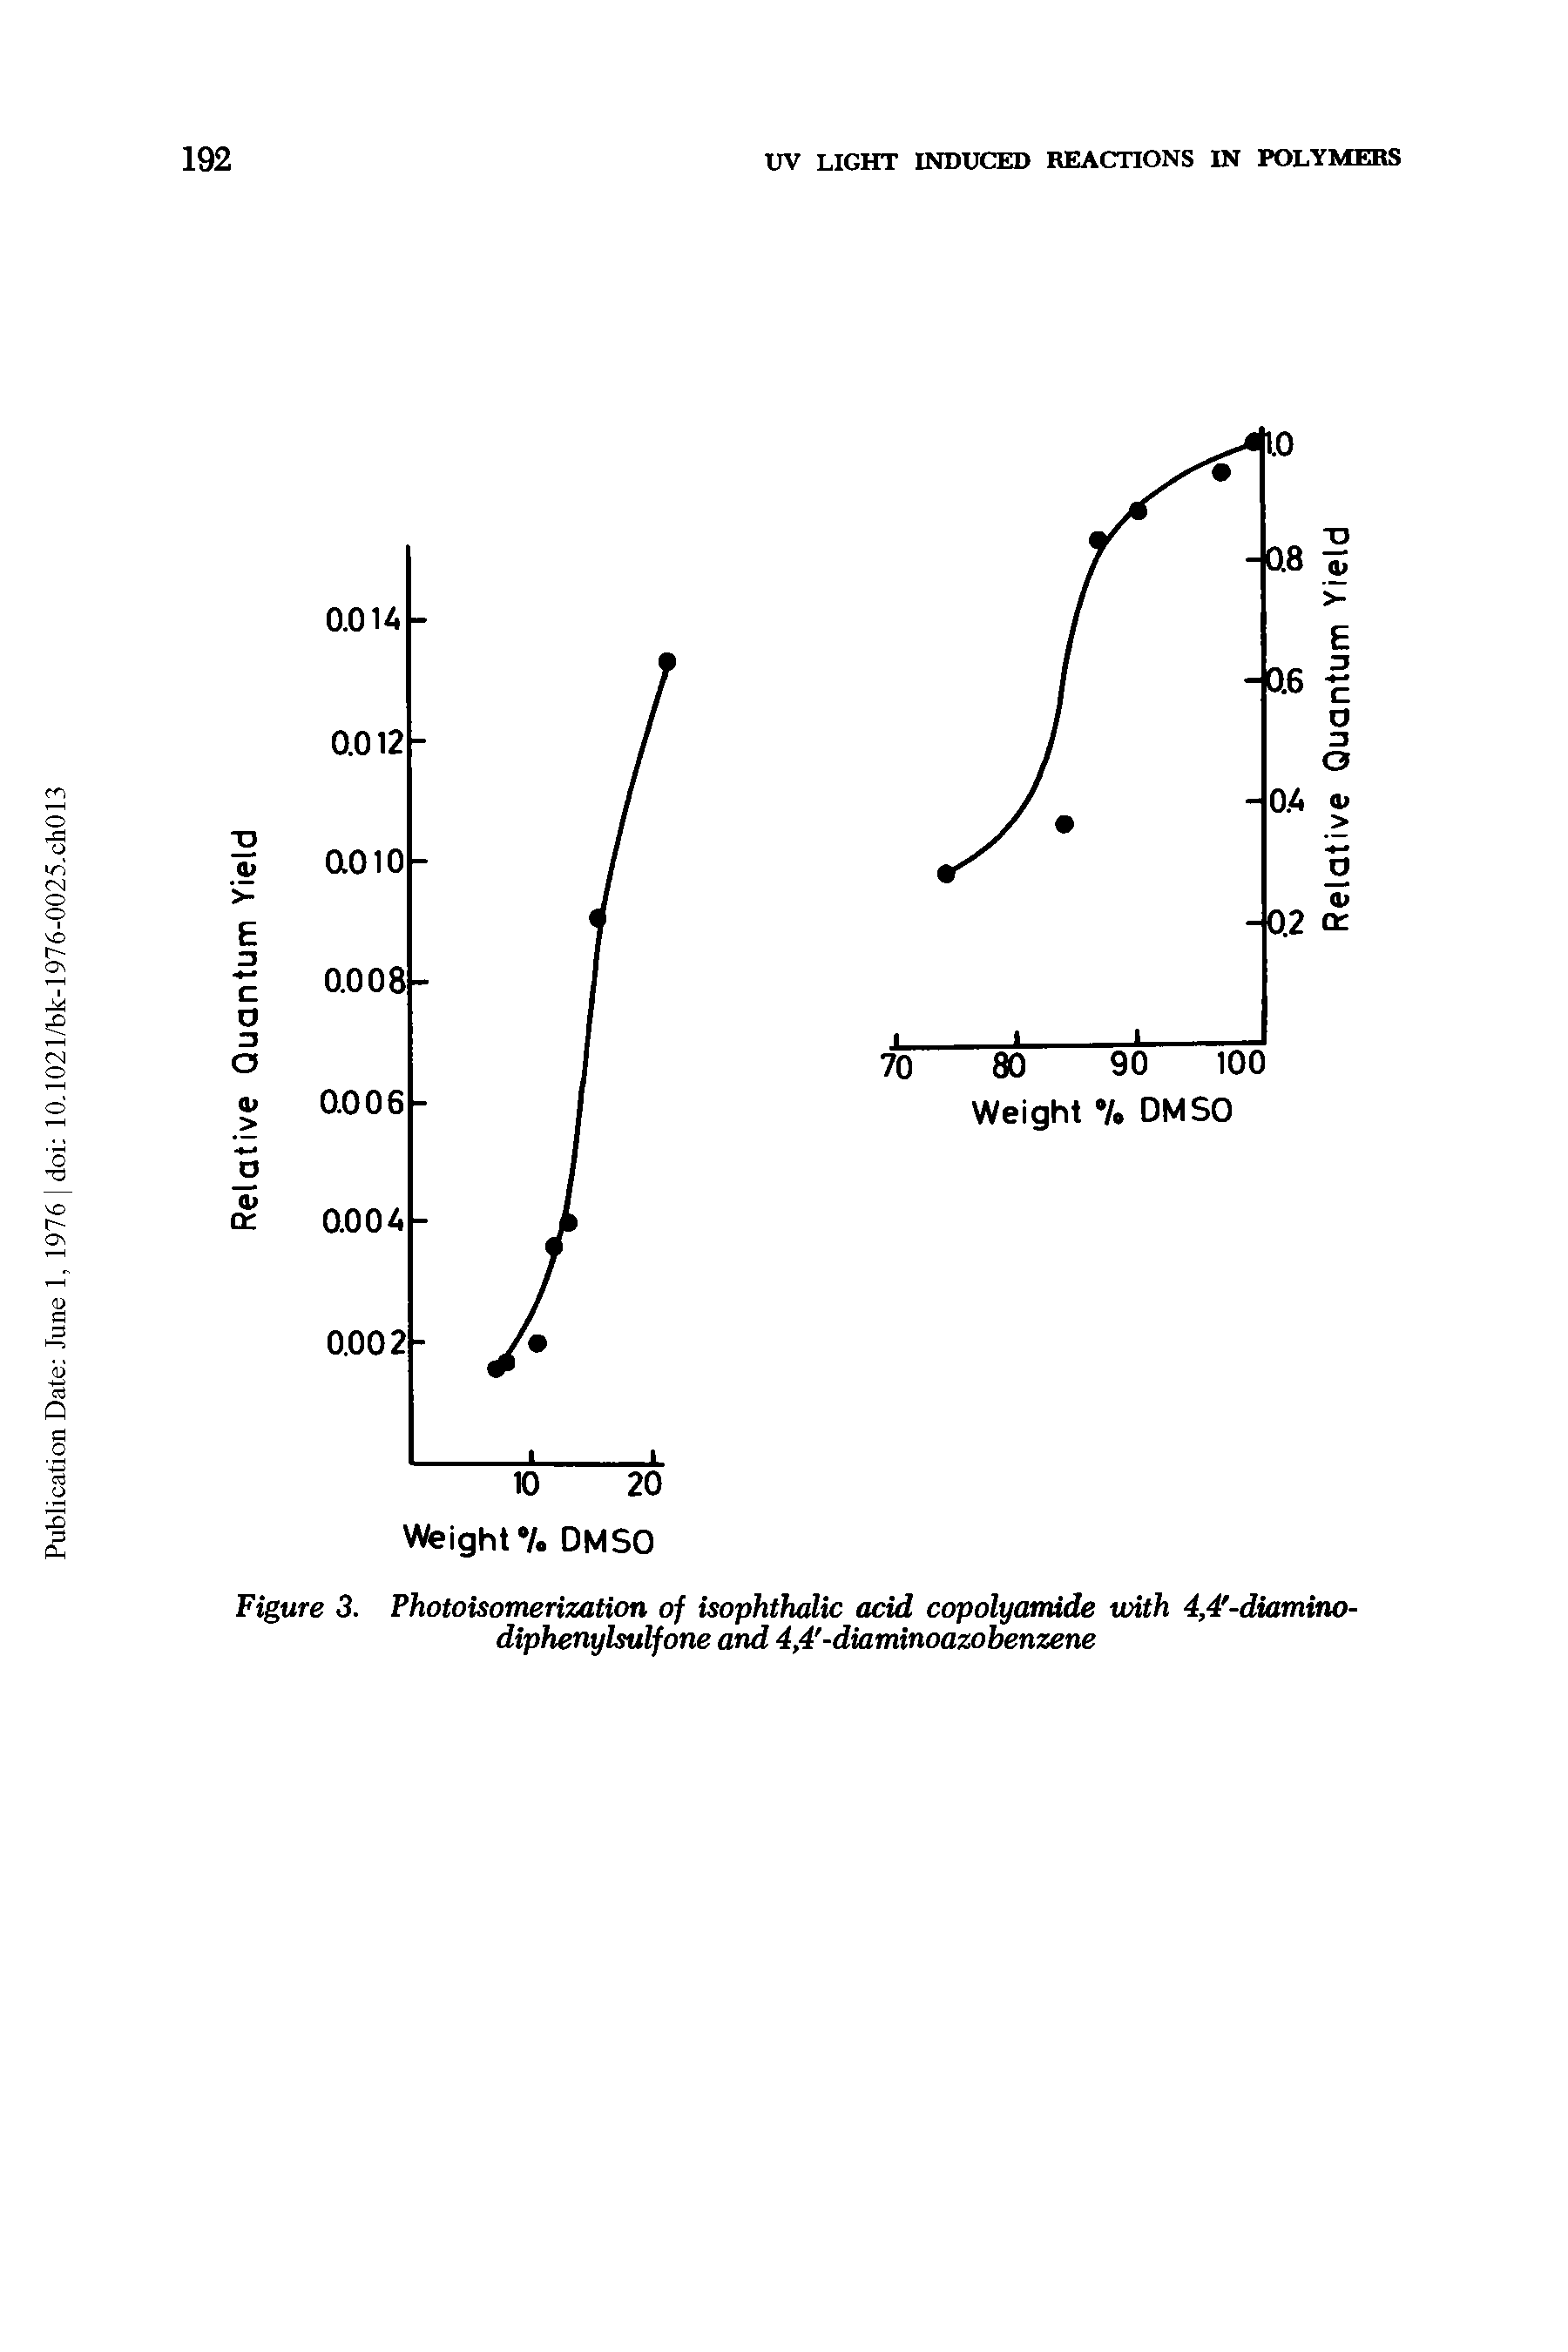 Figure 3. Photoisomerization of isophthalic add copolyamide uAth 4,4 -diamino-diphenylsulfone and 4,4 -diaminoazobenzene...